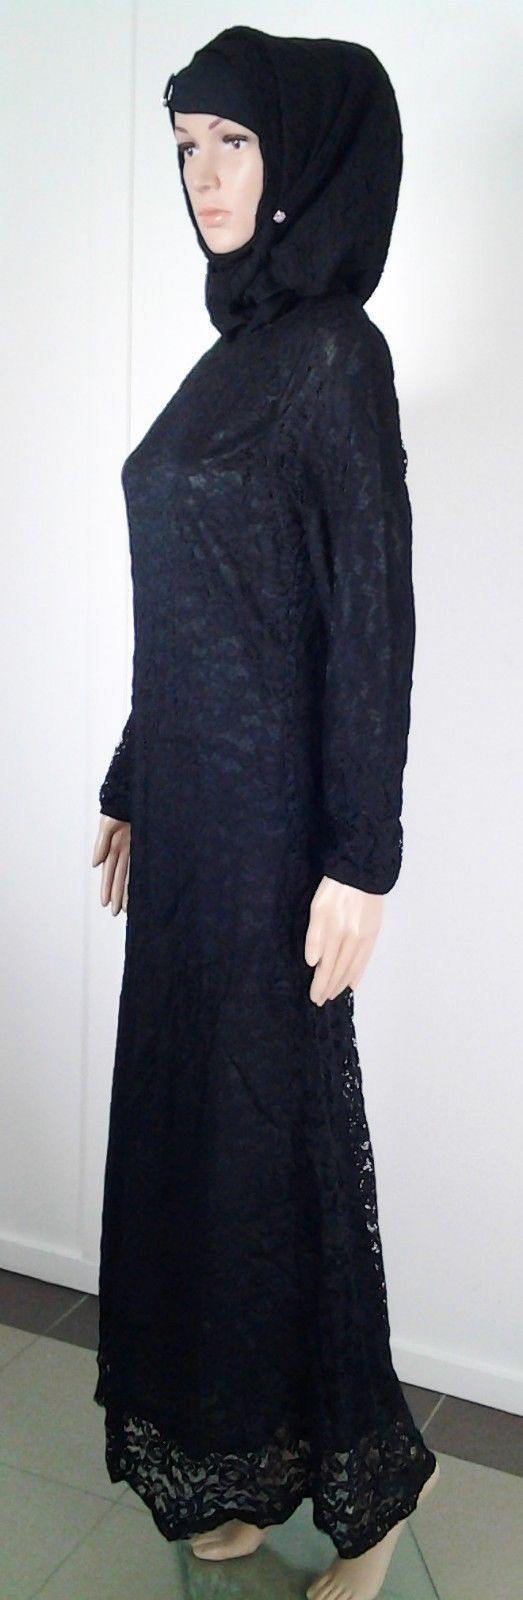 Lace Kaftan Women Islamic Abaya Jilbab Long Sleeve HSZ10016 (US6/EU36/UK10) - Arabian Shopping Zone